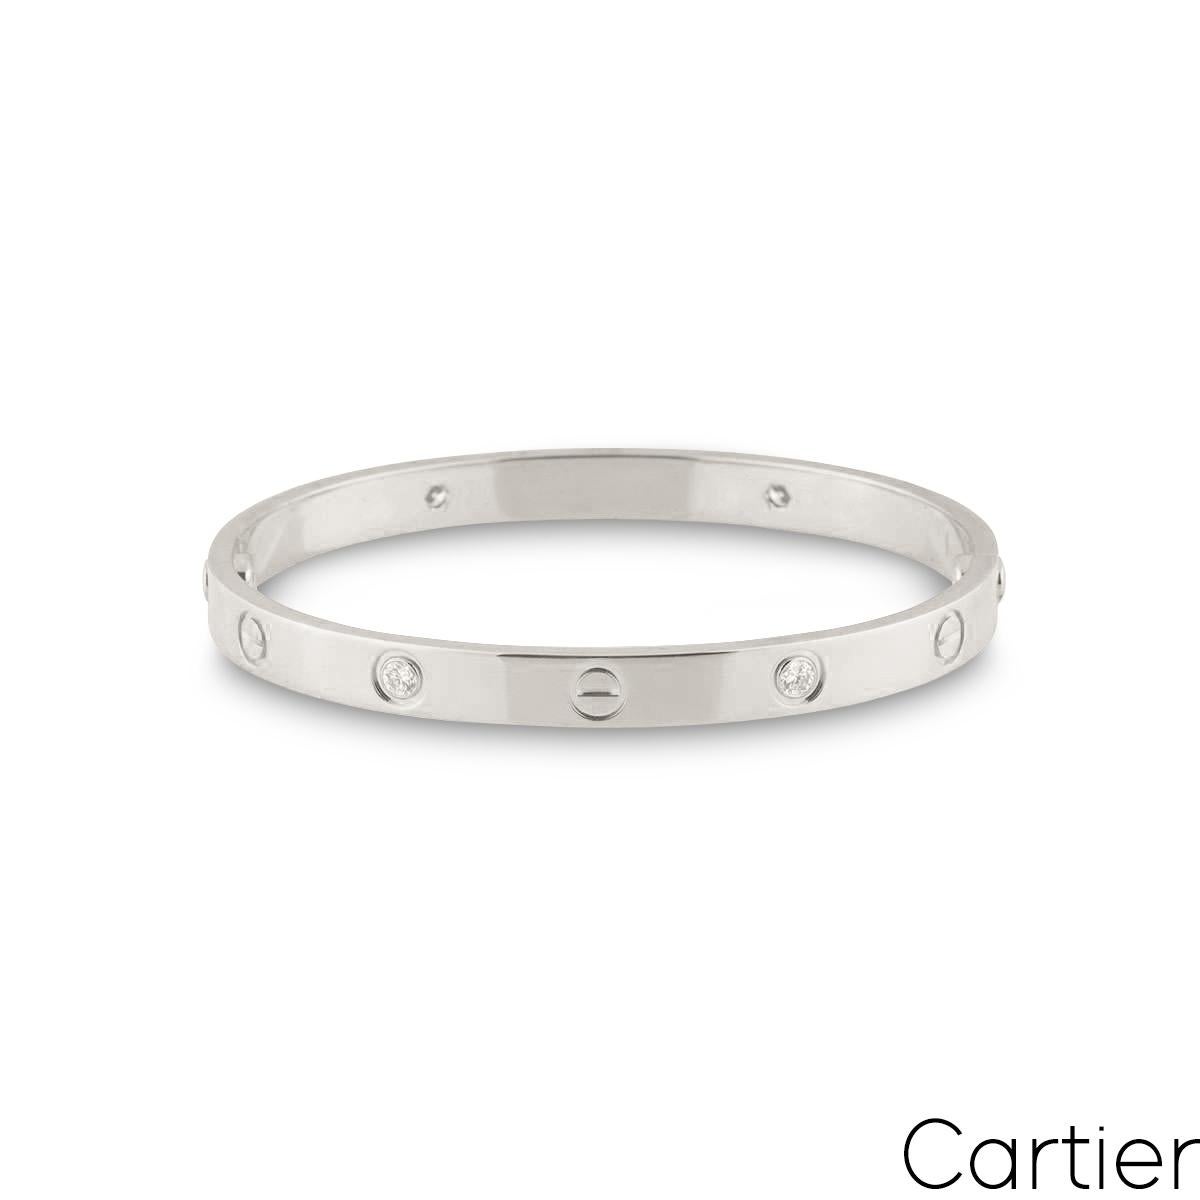 Ein Cartier-Diamantarmband aus 18 Karat Weißgold aus der Collection'S Love. Das Armband besteht aus ikonischen Schraubenmotiven, die sich mit runden Diamanten im Brillantschliff abwechseln. Es gibt 4 runde Diamanten im Brillantschliff in einer